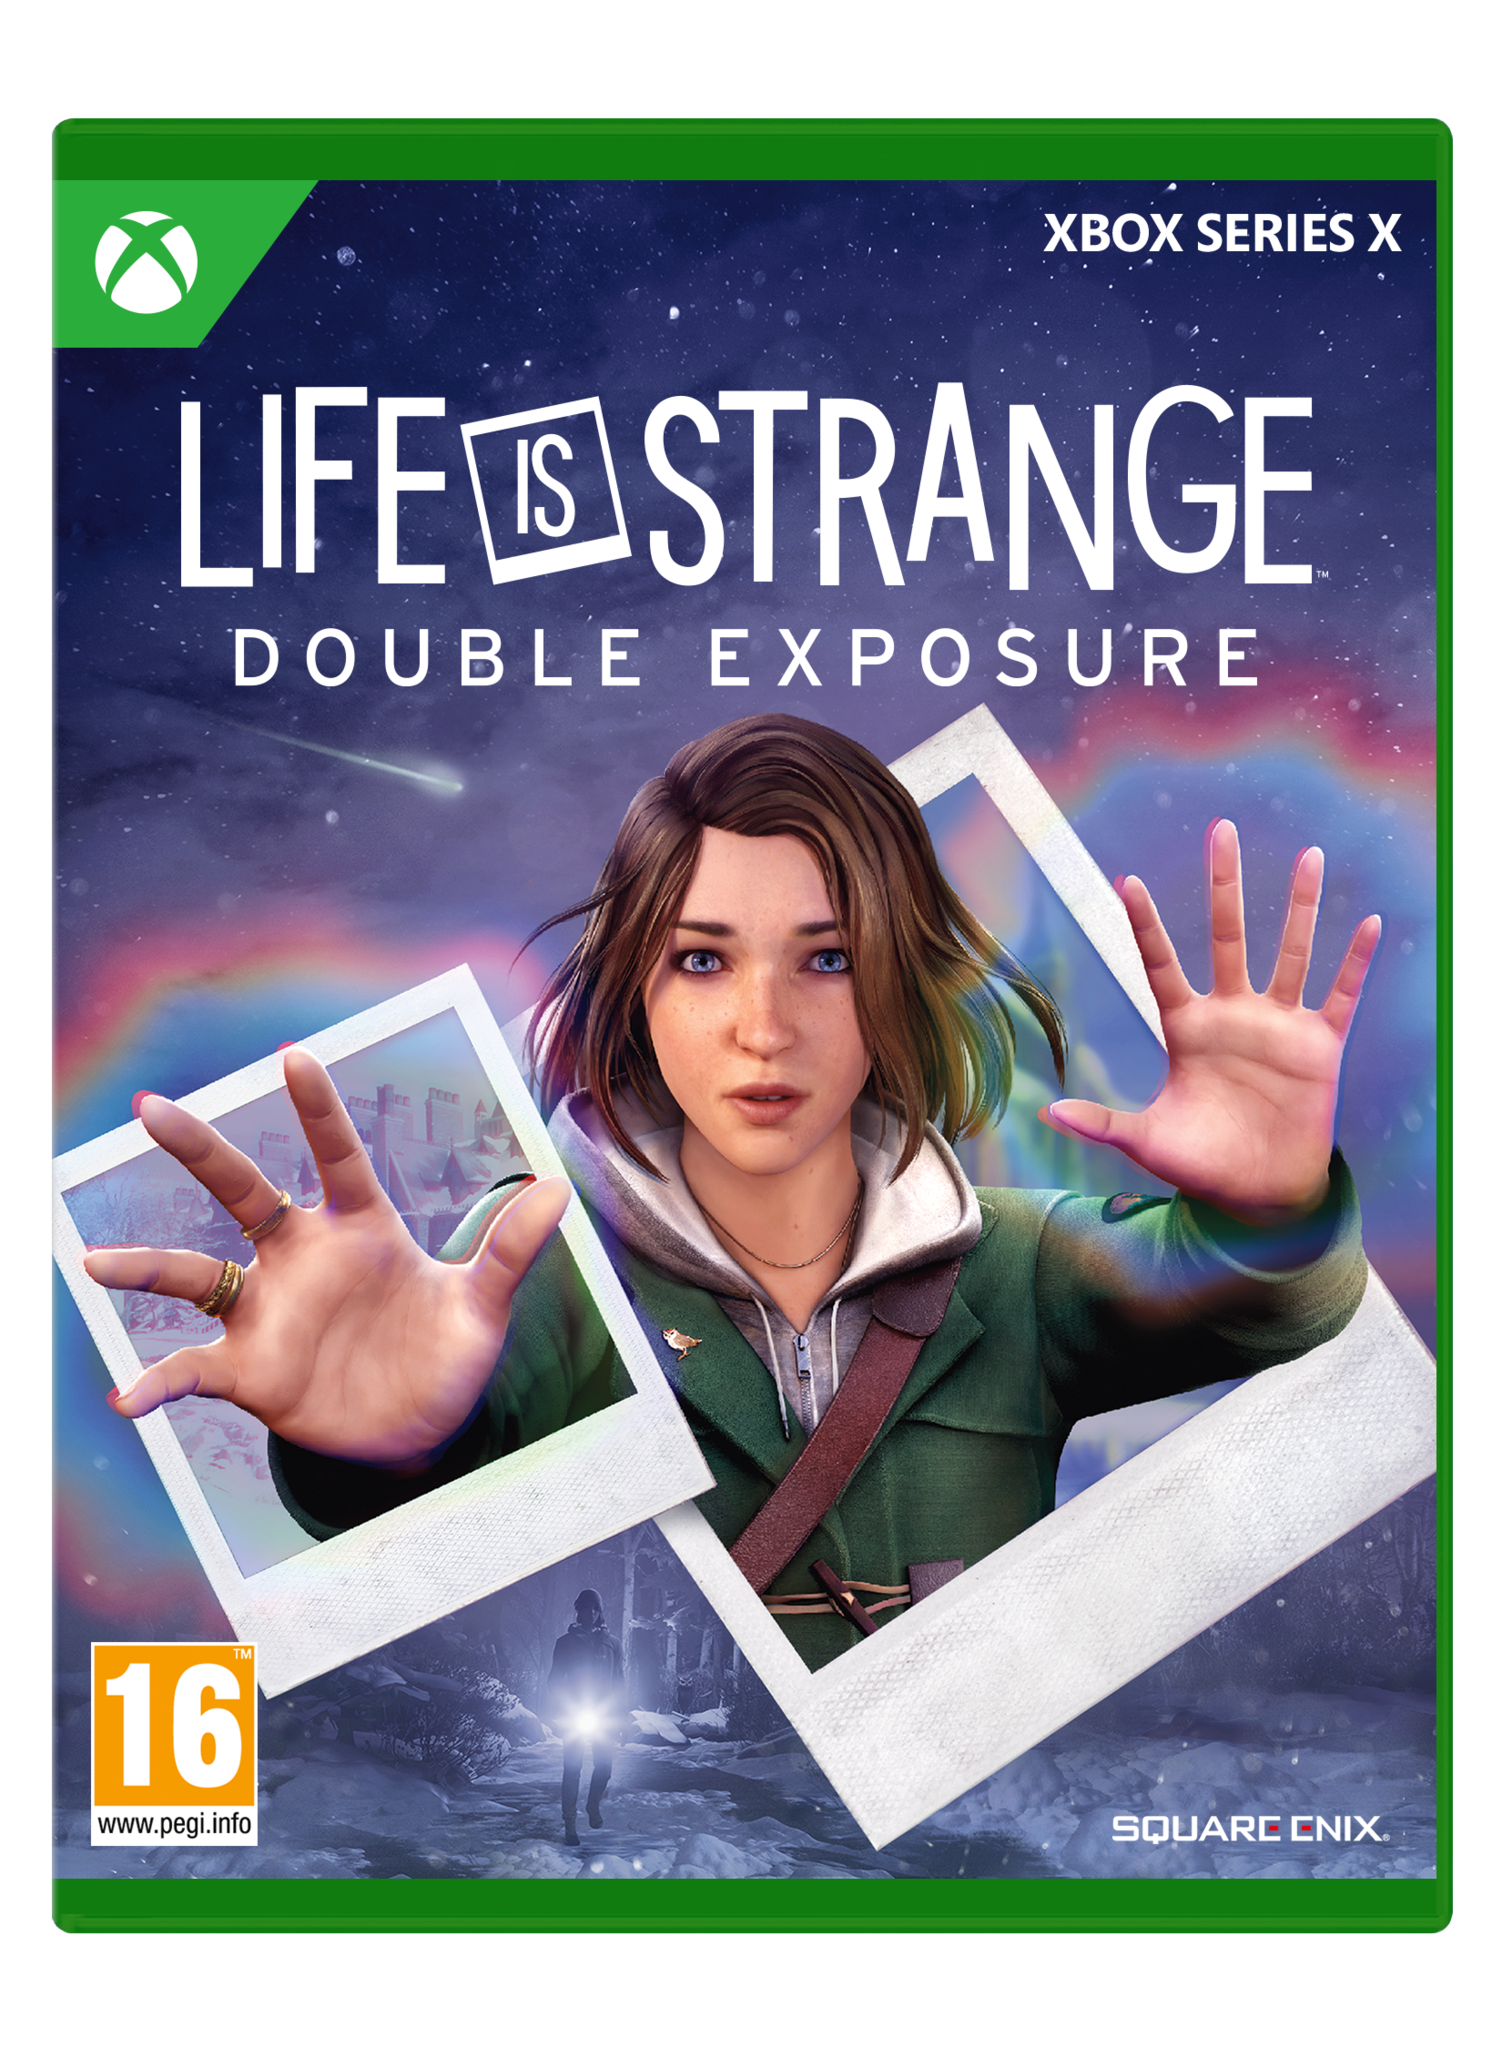 Xbox Series X Life is strange: Double Exposure